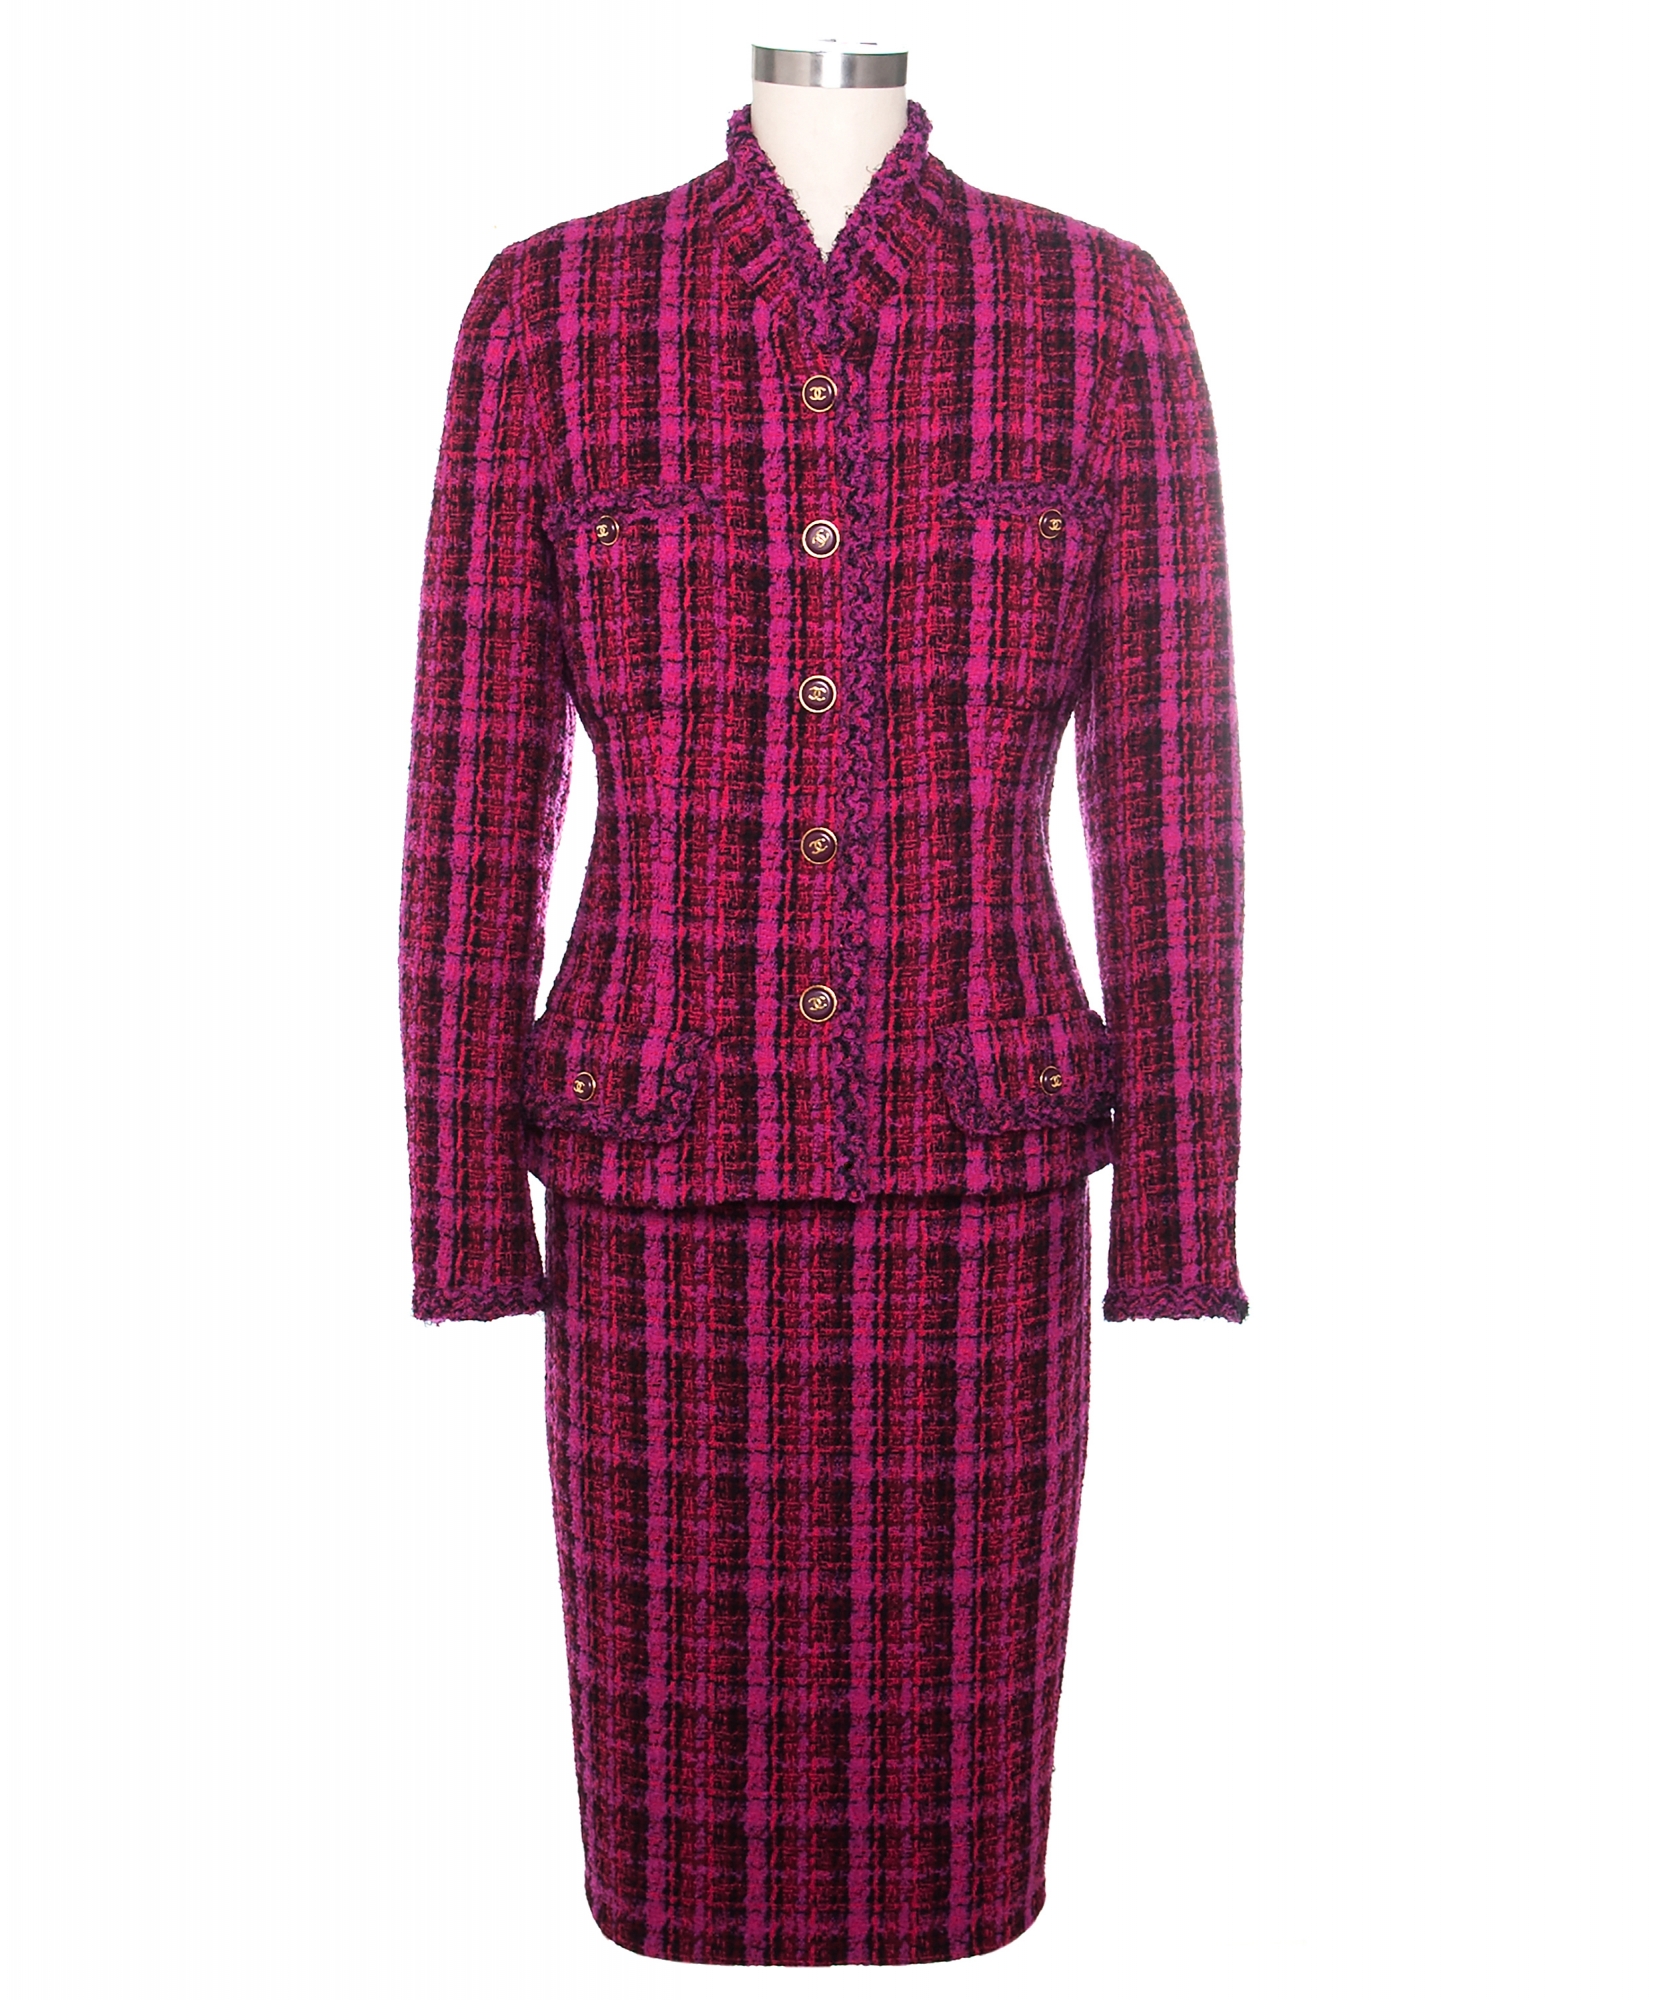 Documented 1995 Chanel Runway Tweed Skirt Suit | La Doyenne